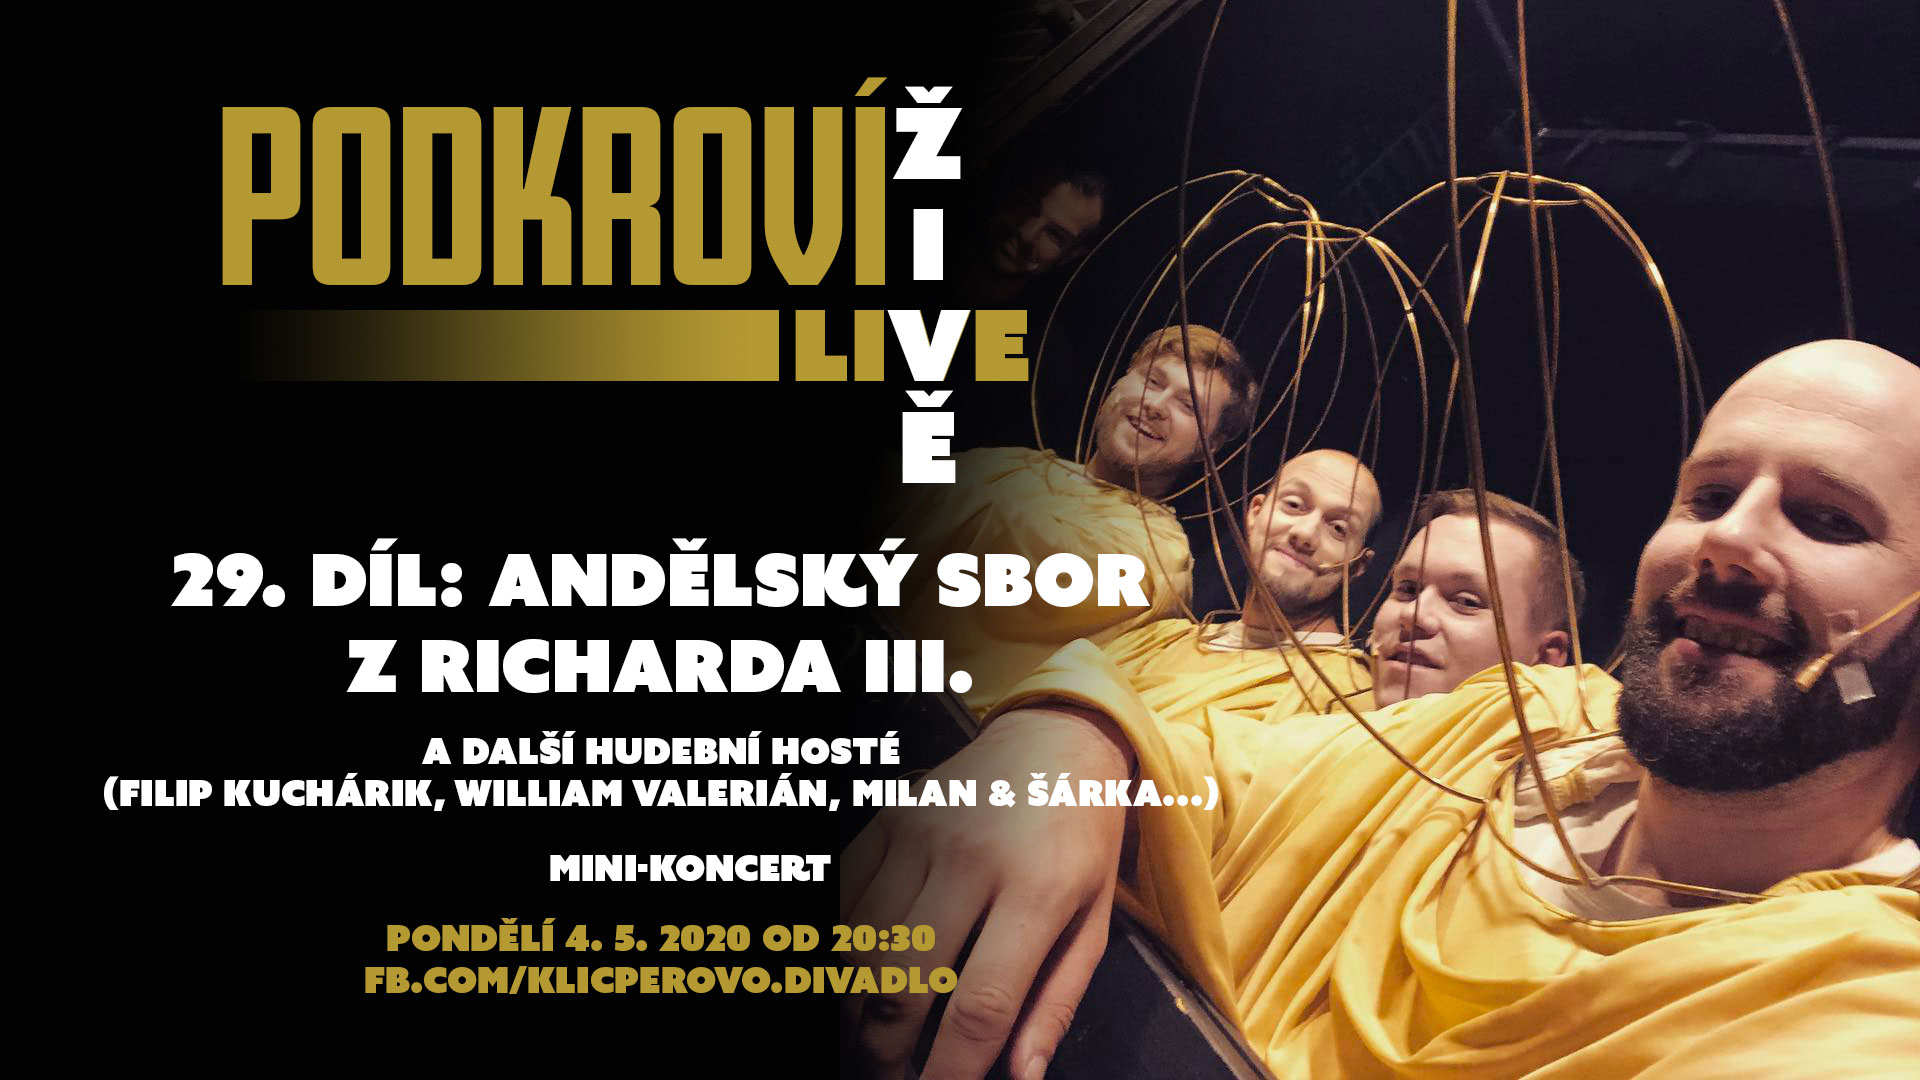 Sedmý týden vysílání Podkroví Live z Klicperova divadla